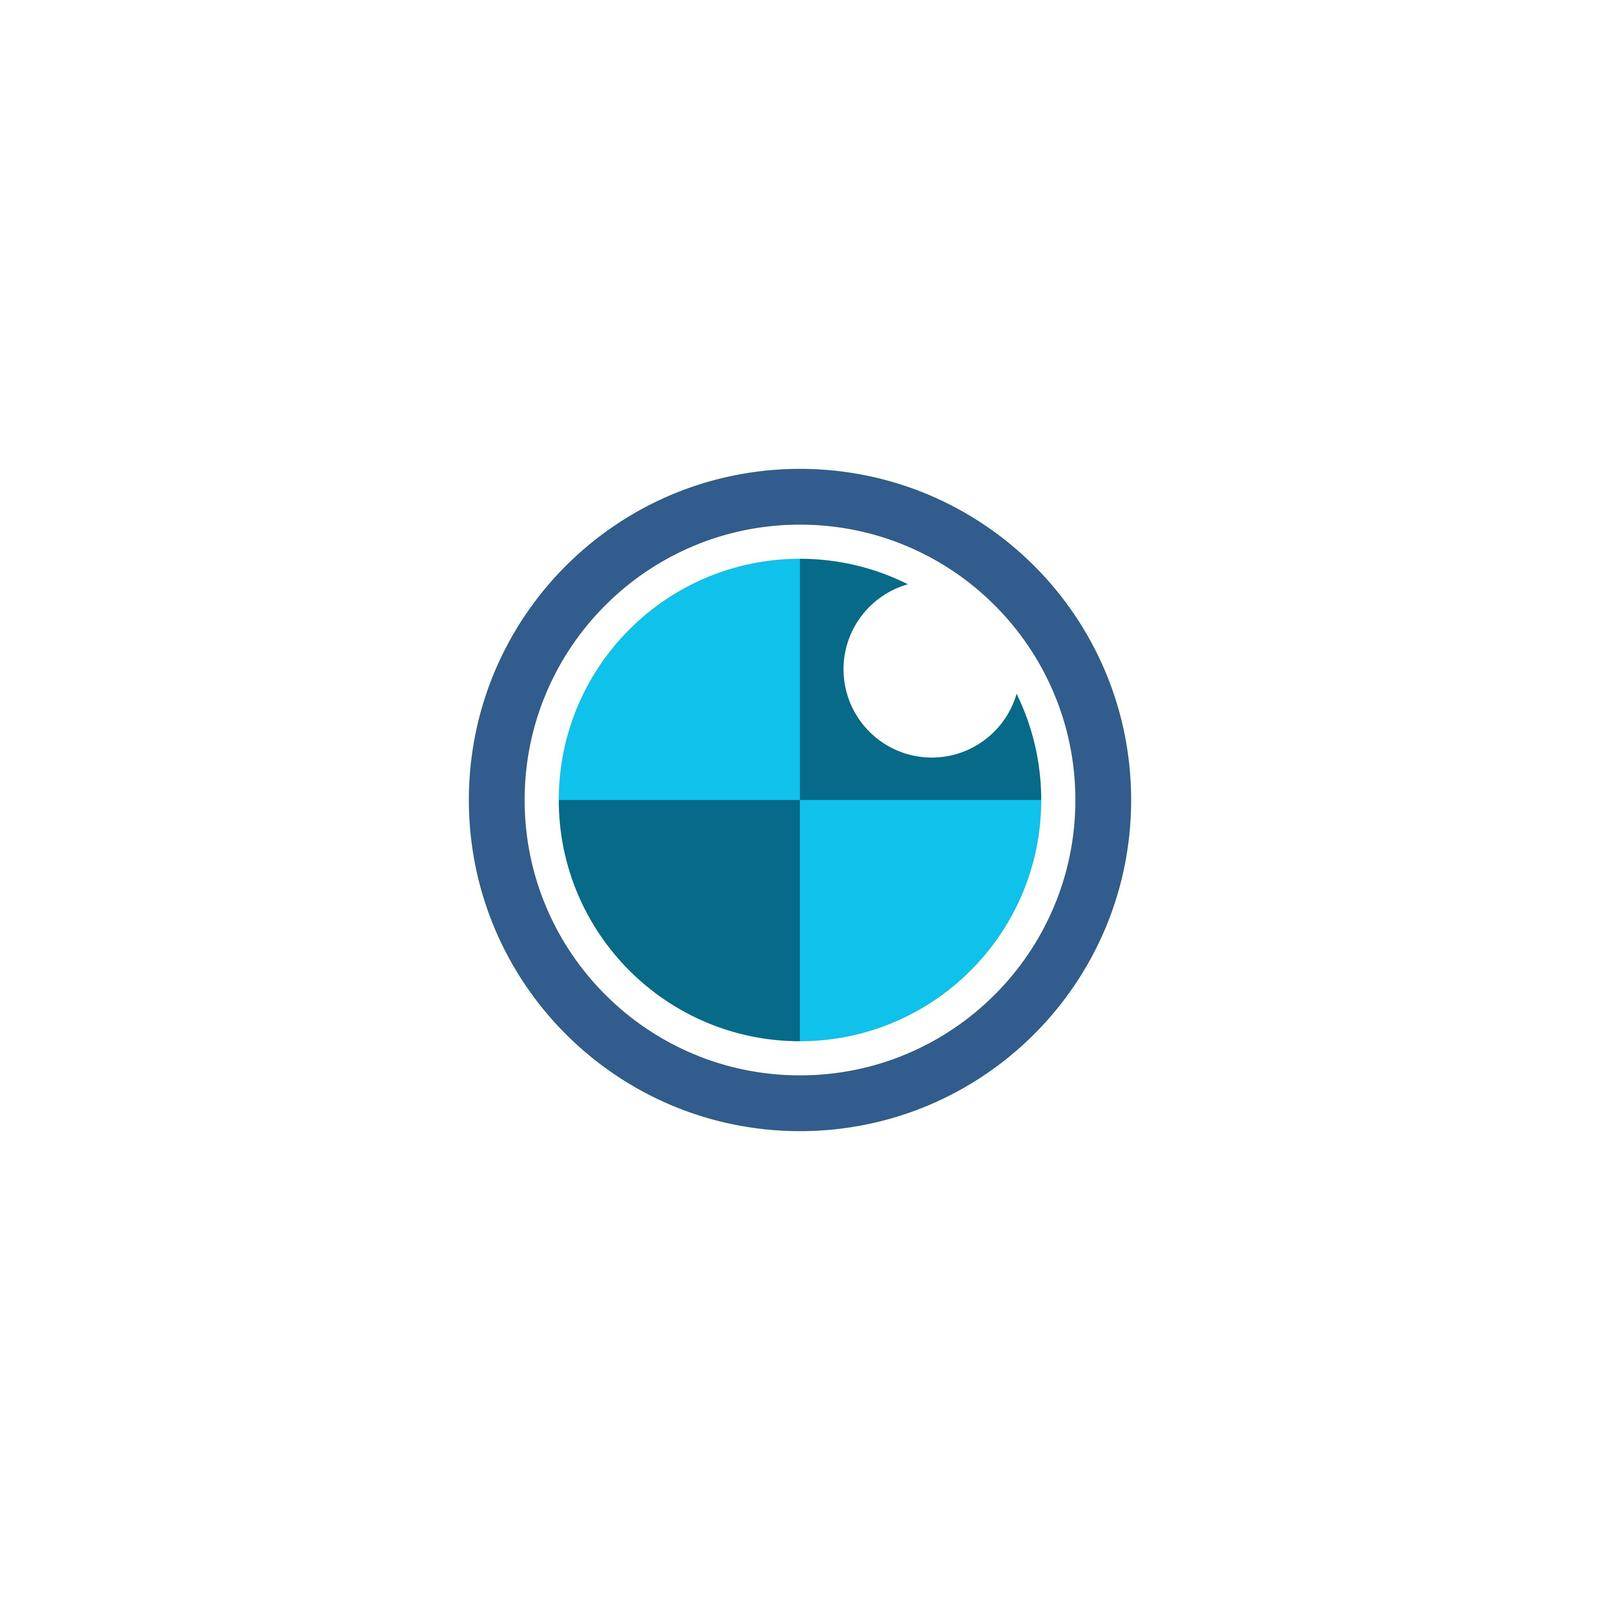 Eye vector logo design image template